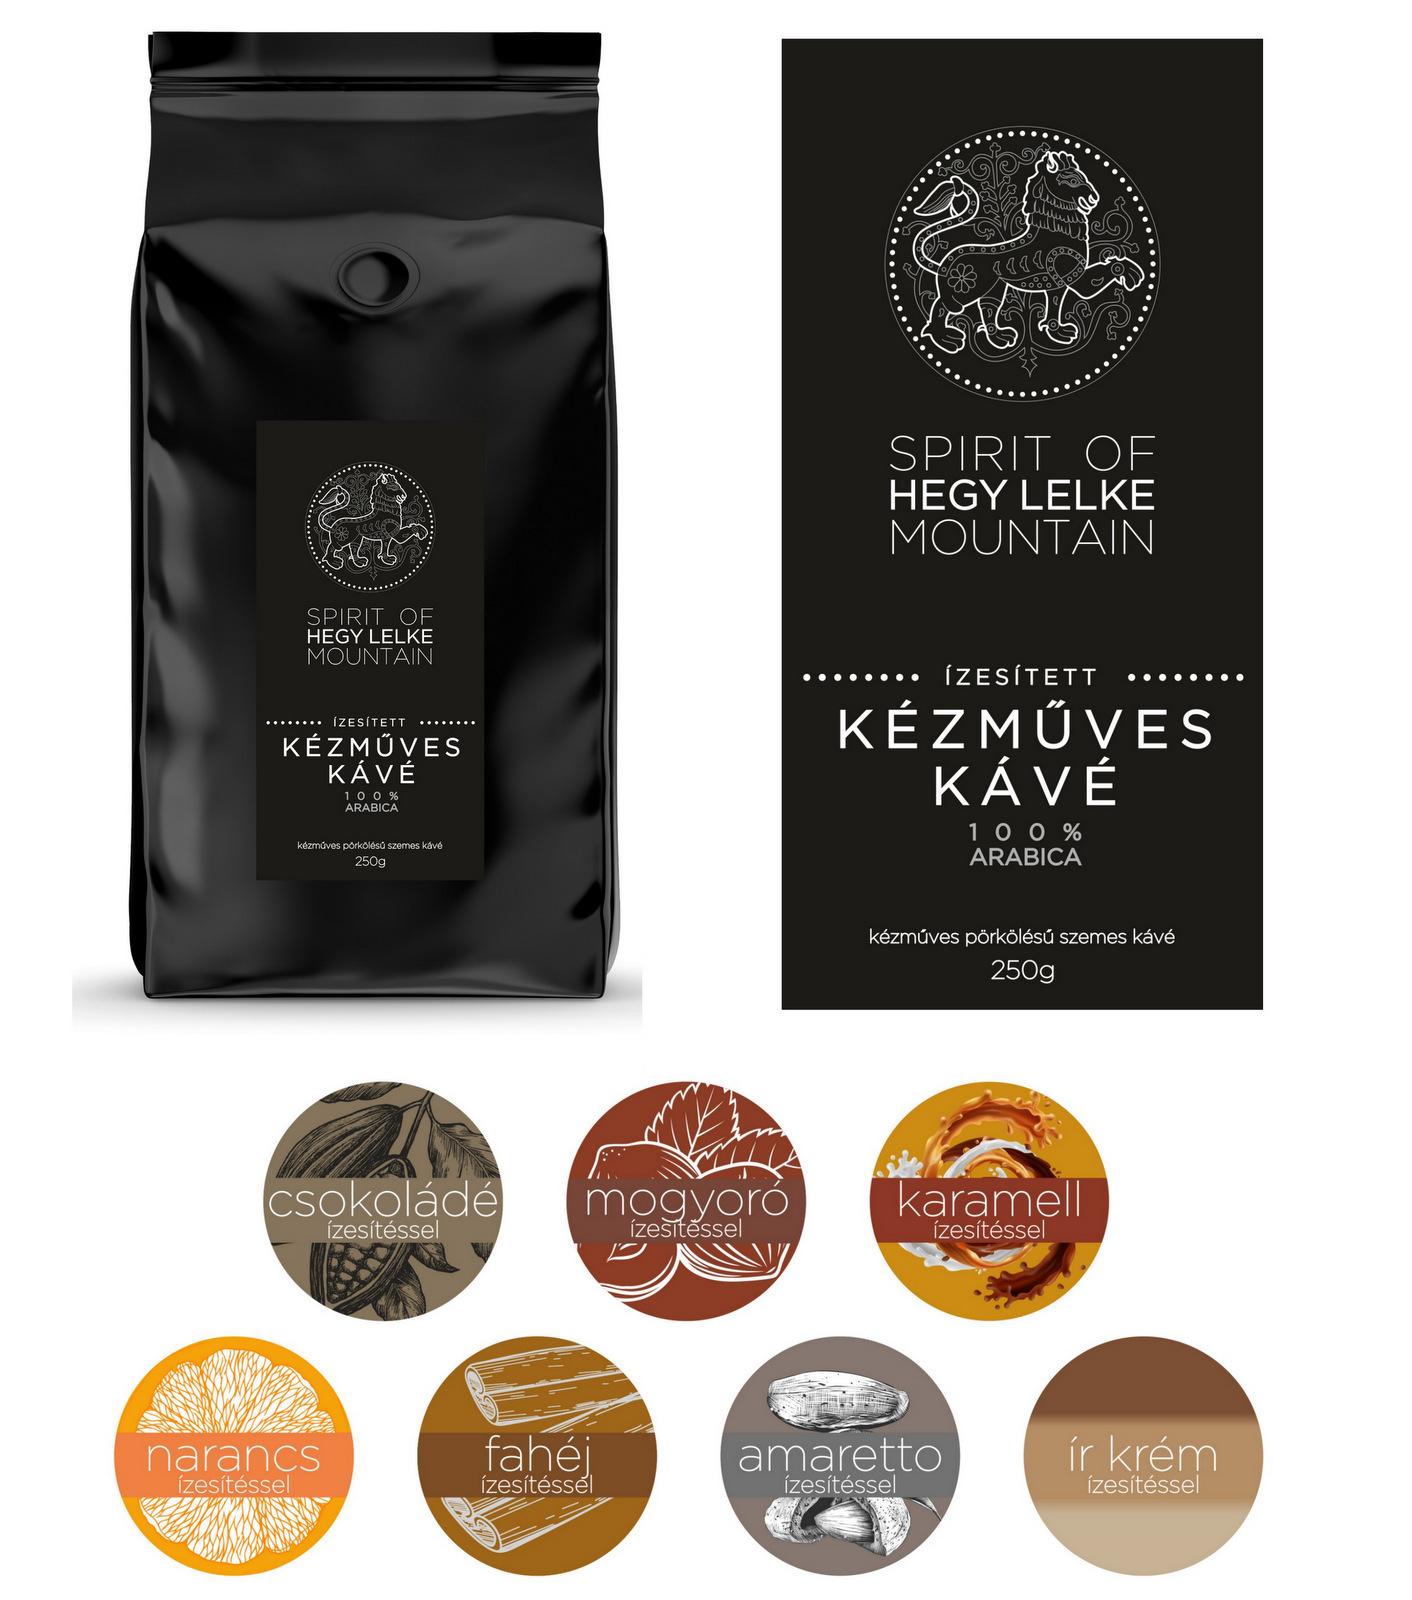 HEGY LELKE - SPIRIT OF MOUNTAIN mogyoró ízesítésű kávékülönlegesség válogatás 7 íz x 250g